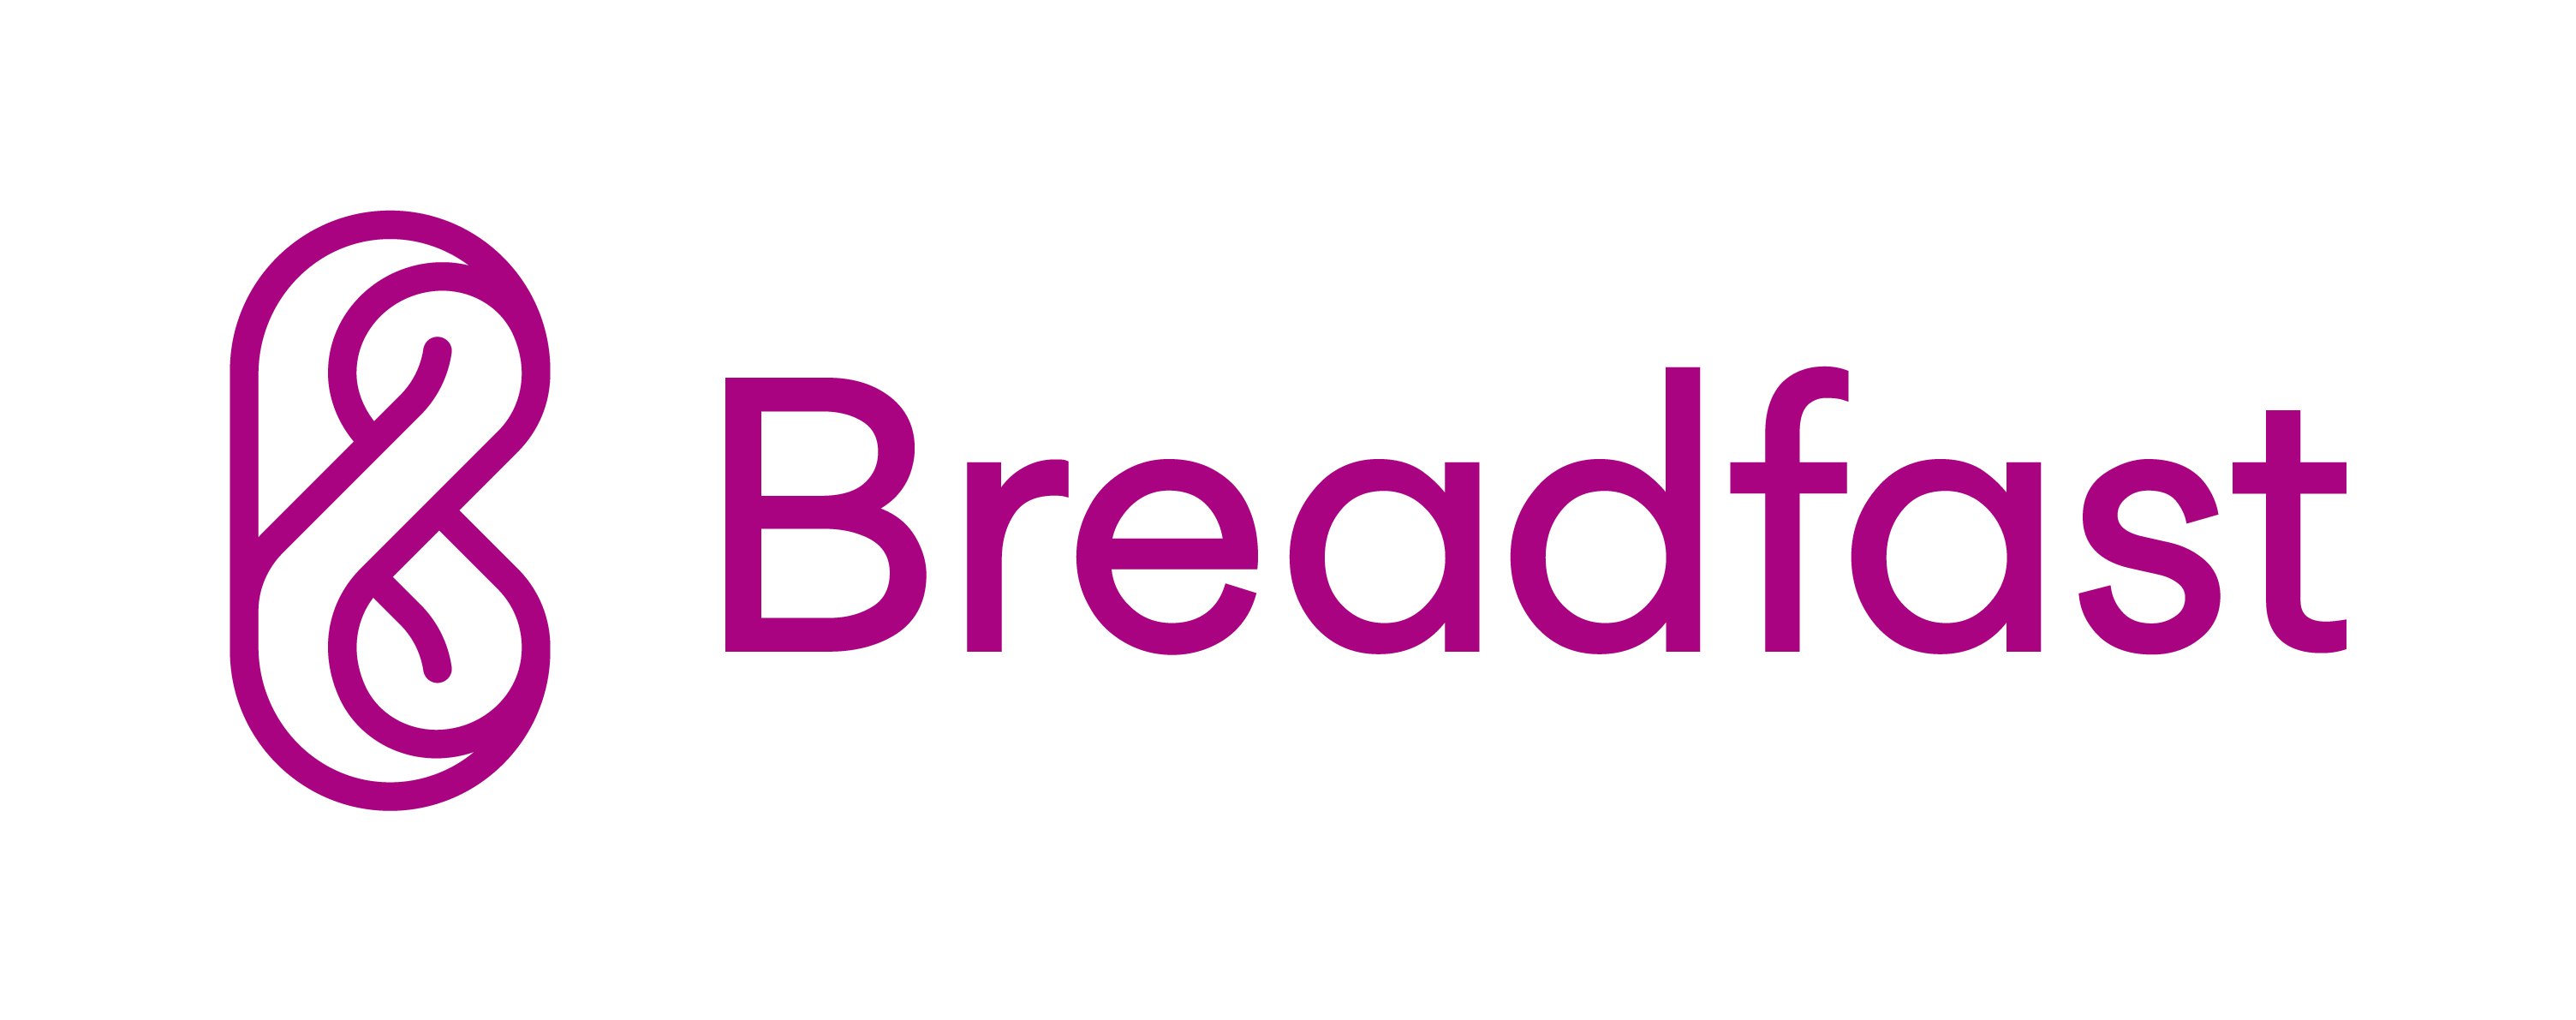 Breadfast | ElSupplier.com